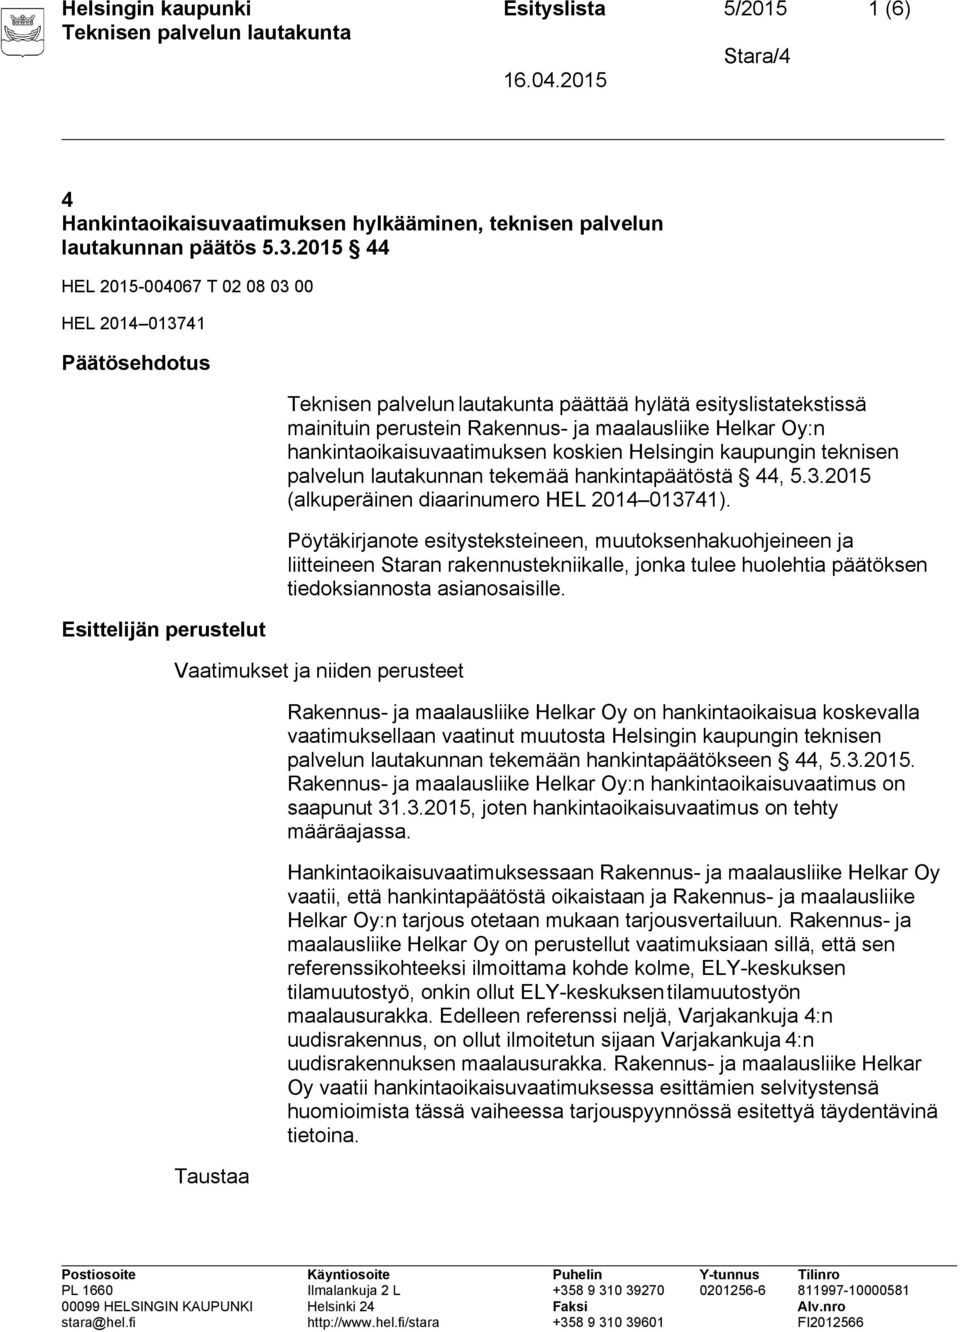 hankintaoikaisuvaatimuksen koskien Helsingin kaupungin teknisen palvelun lautakunnan tekemää hankintapäätöstä 44, 5.3.2015 (alkuperäinen diaarinumero HEL 2014 013741).